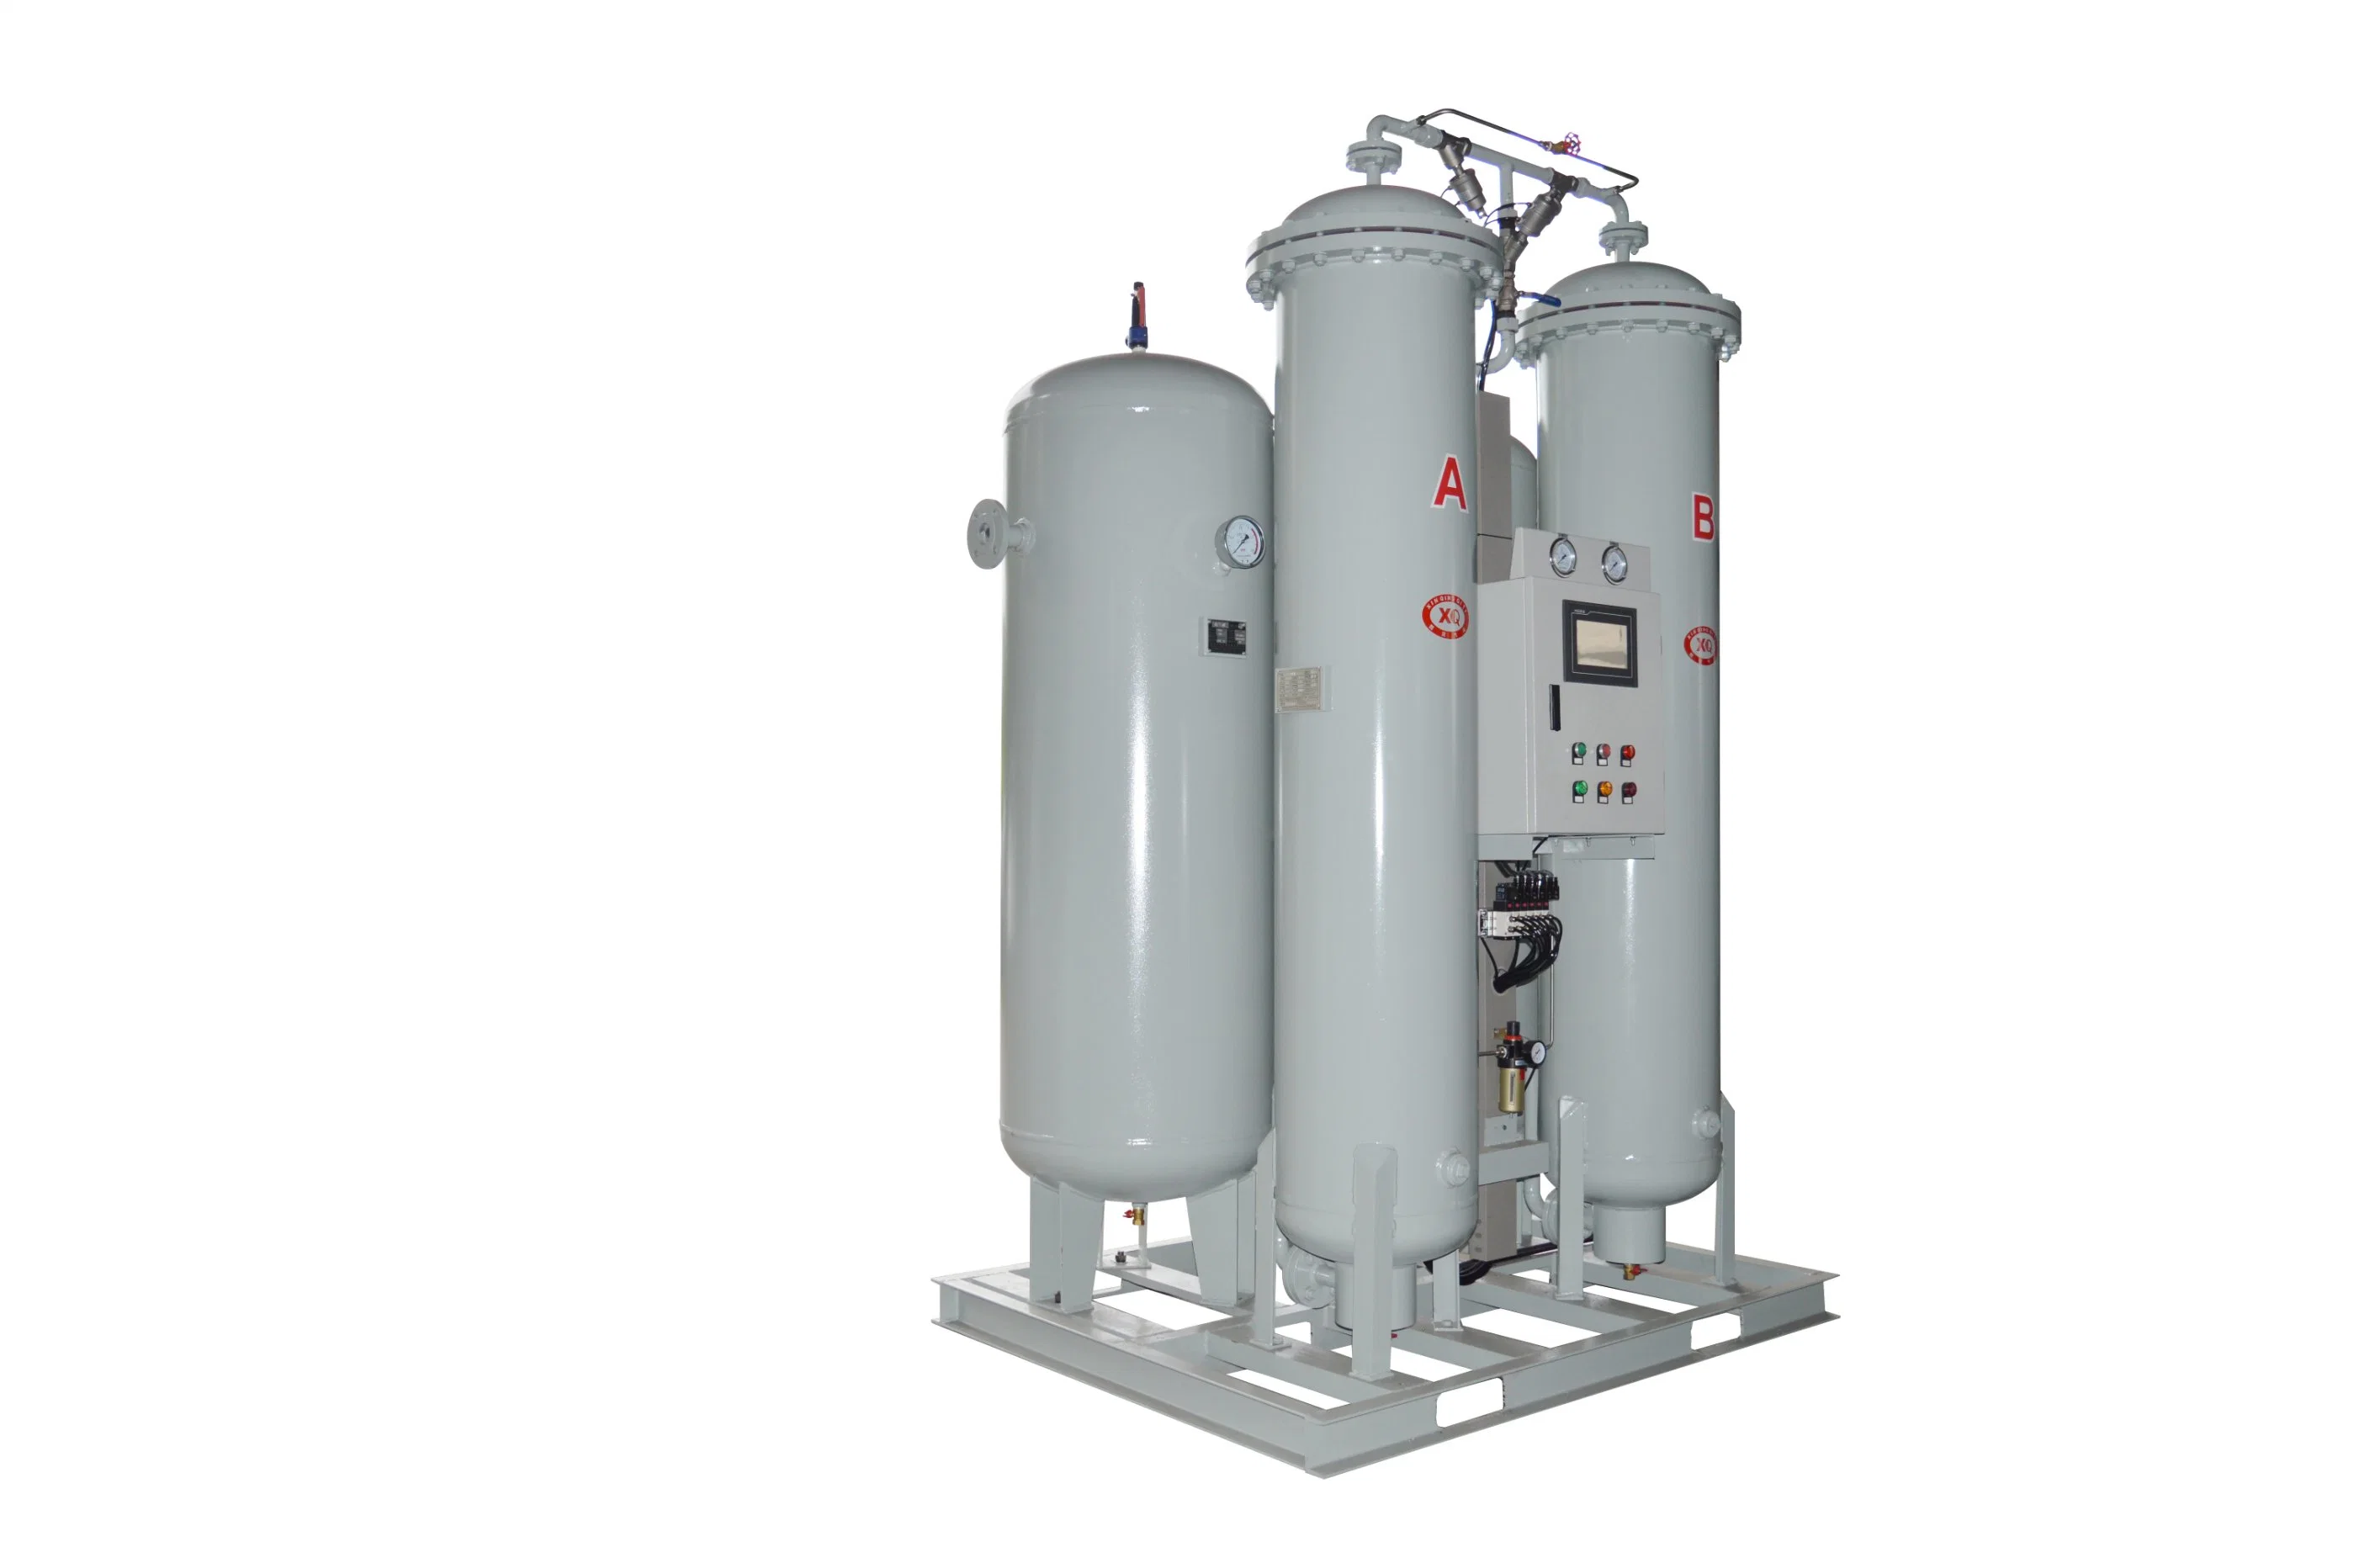 Sauerstoffgenerator Anlage Fertigungsanlage Hohe Produktivität 93% Sauerstoff Medizinisch Sauerstofferzeugende Anlage